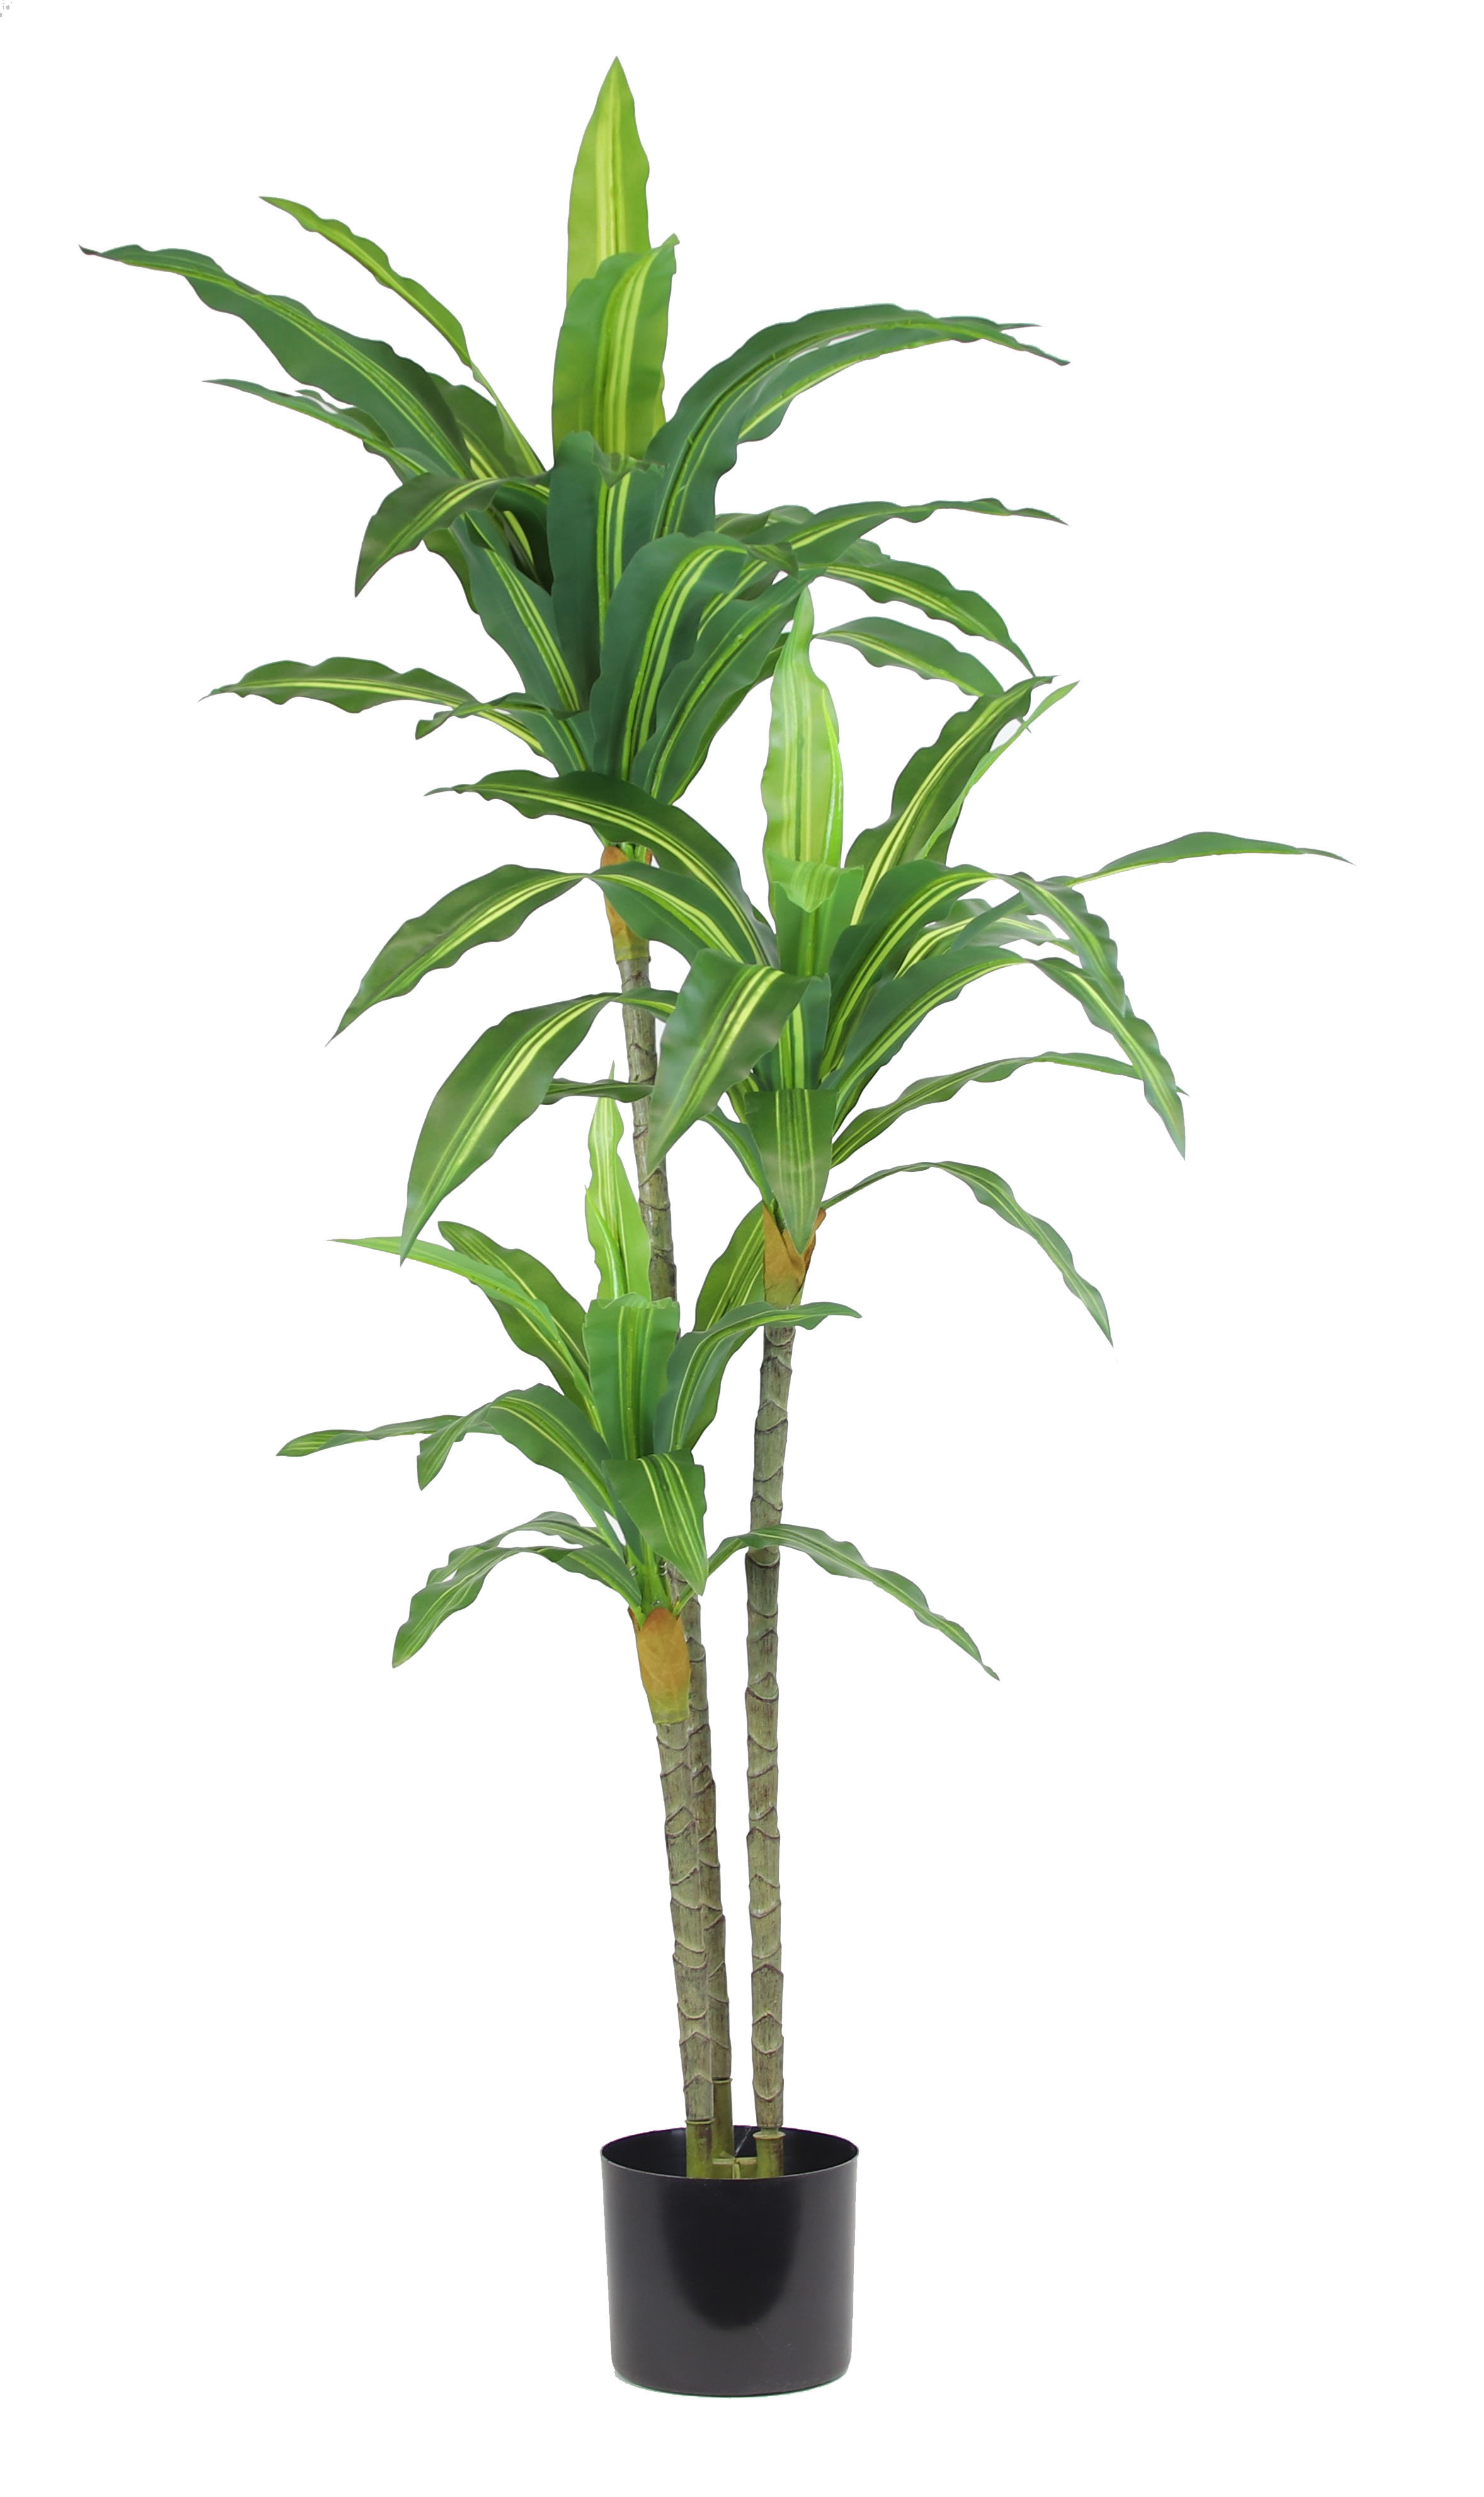 Primrue 48'' Faux Dracaena Plant in Planter & Reviews | Wayfair